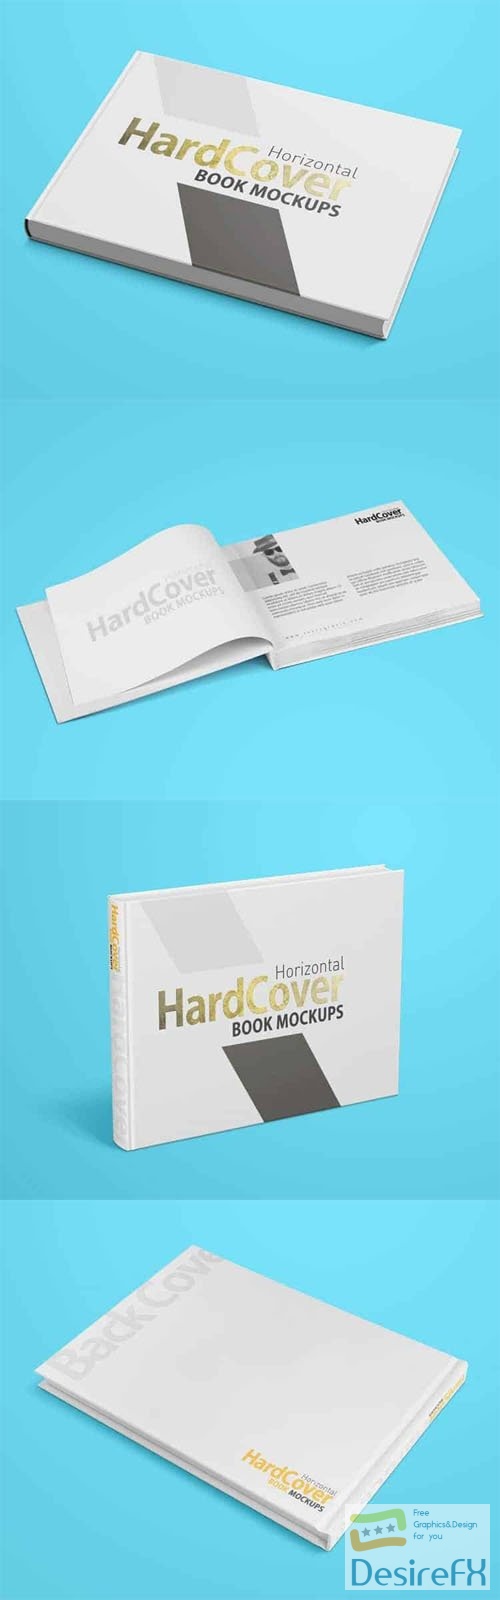 Horizontal HardCover Book PSD Mockups Templates